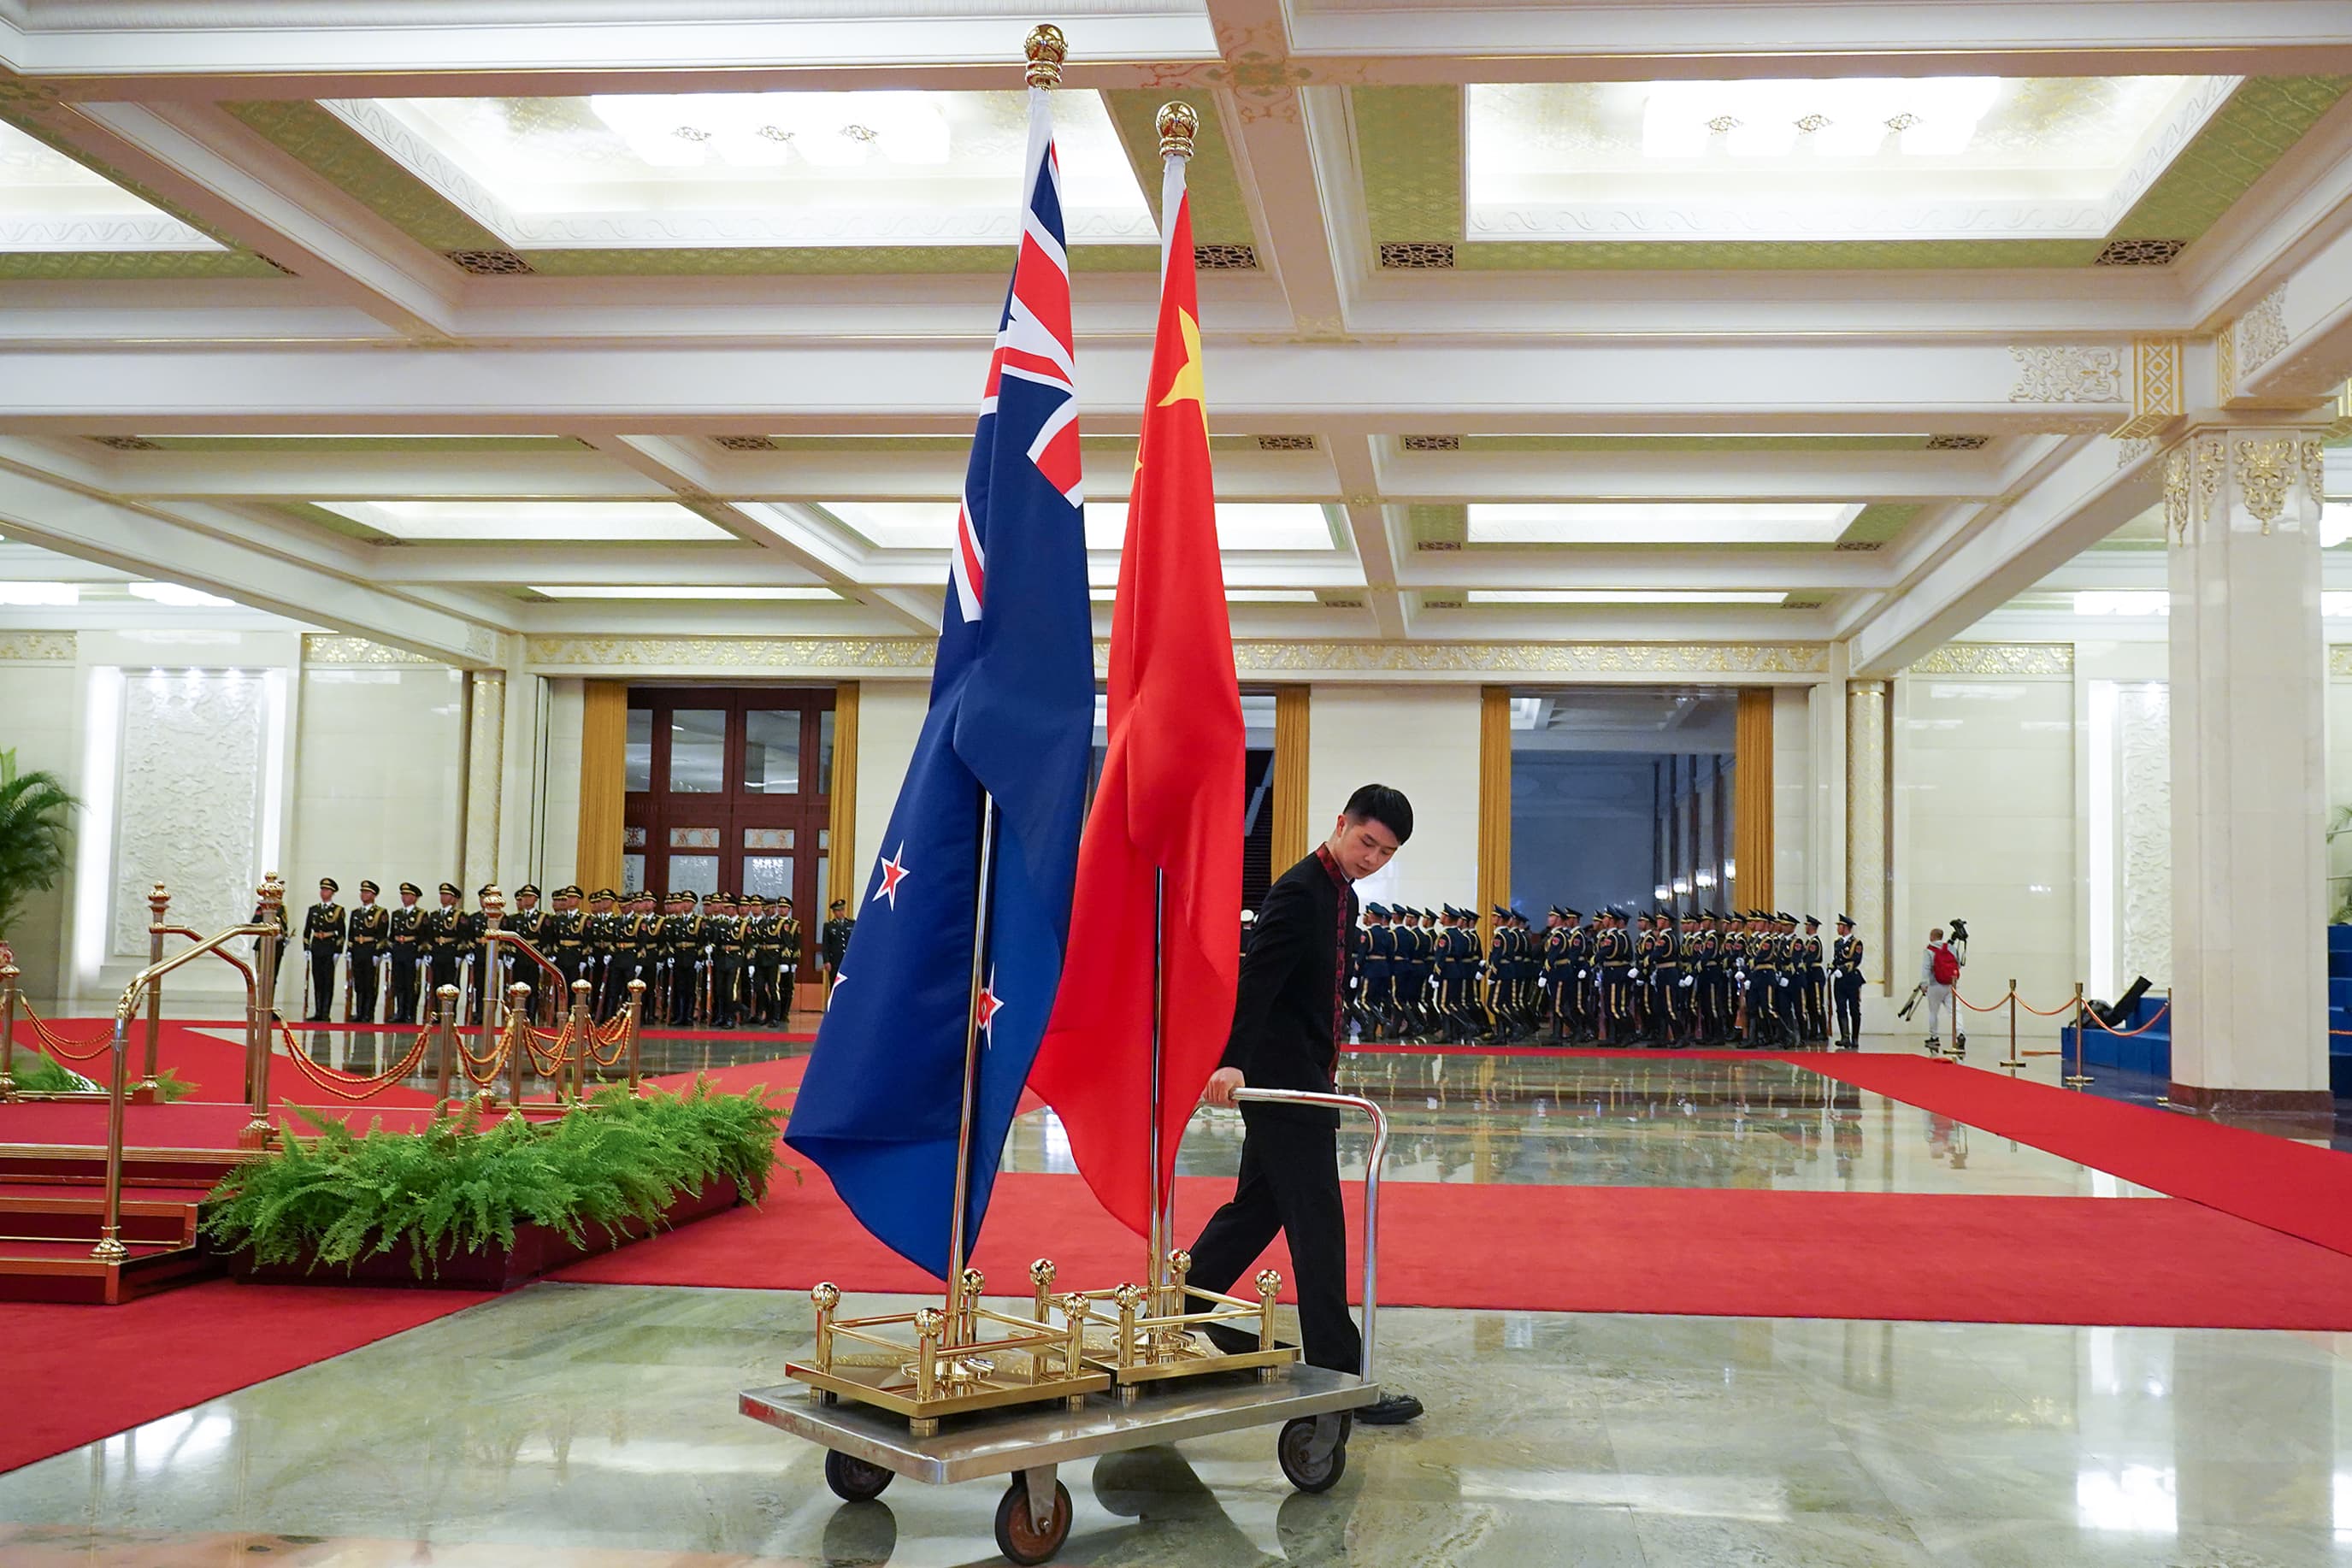 Chiny i Nowa Zelandia zobowiązują się do głębszej współpracy handlowej i gospodarczej